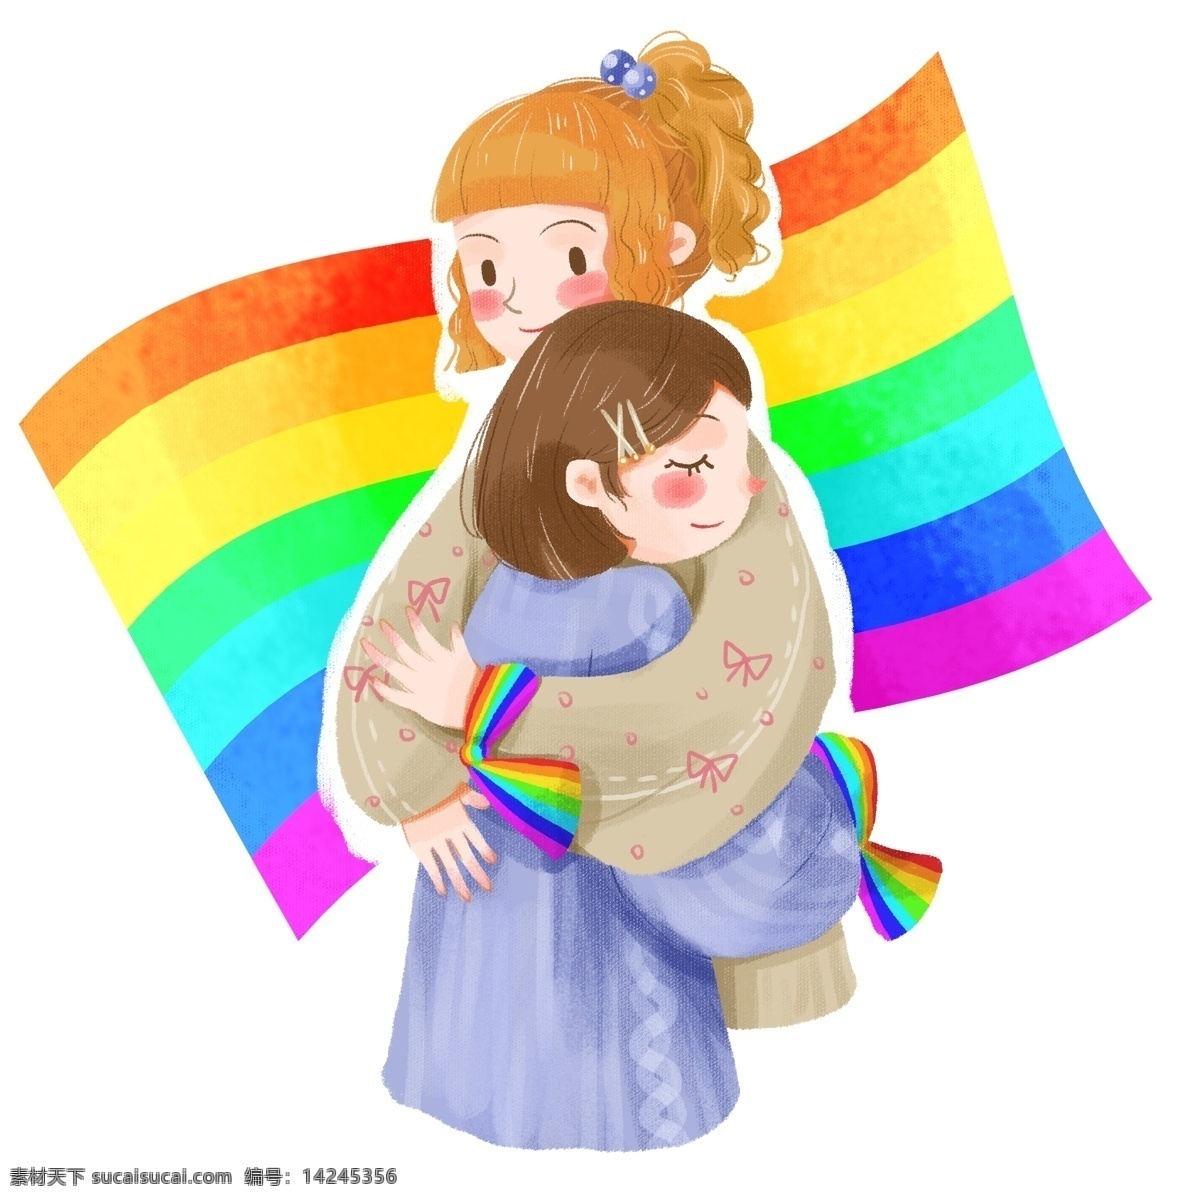 手绘 卡通 可爱 女孩 不再 恐 同日 同性恋 彩虹 旗 不再恐同日 彩虹旗 拥抱 女女